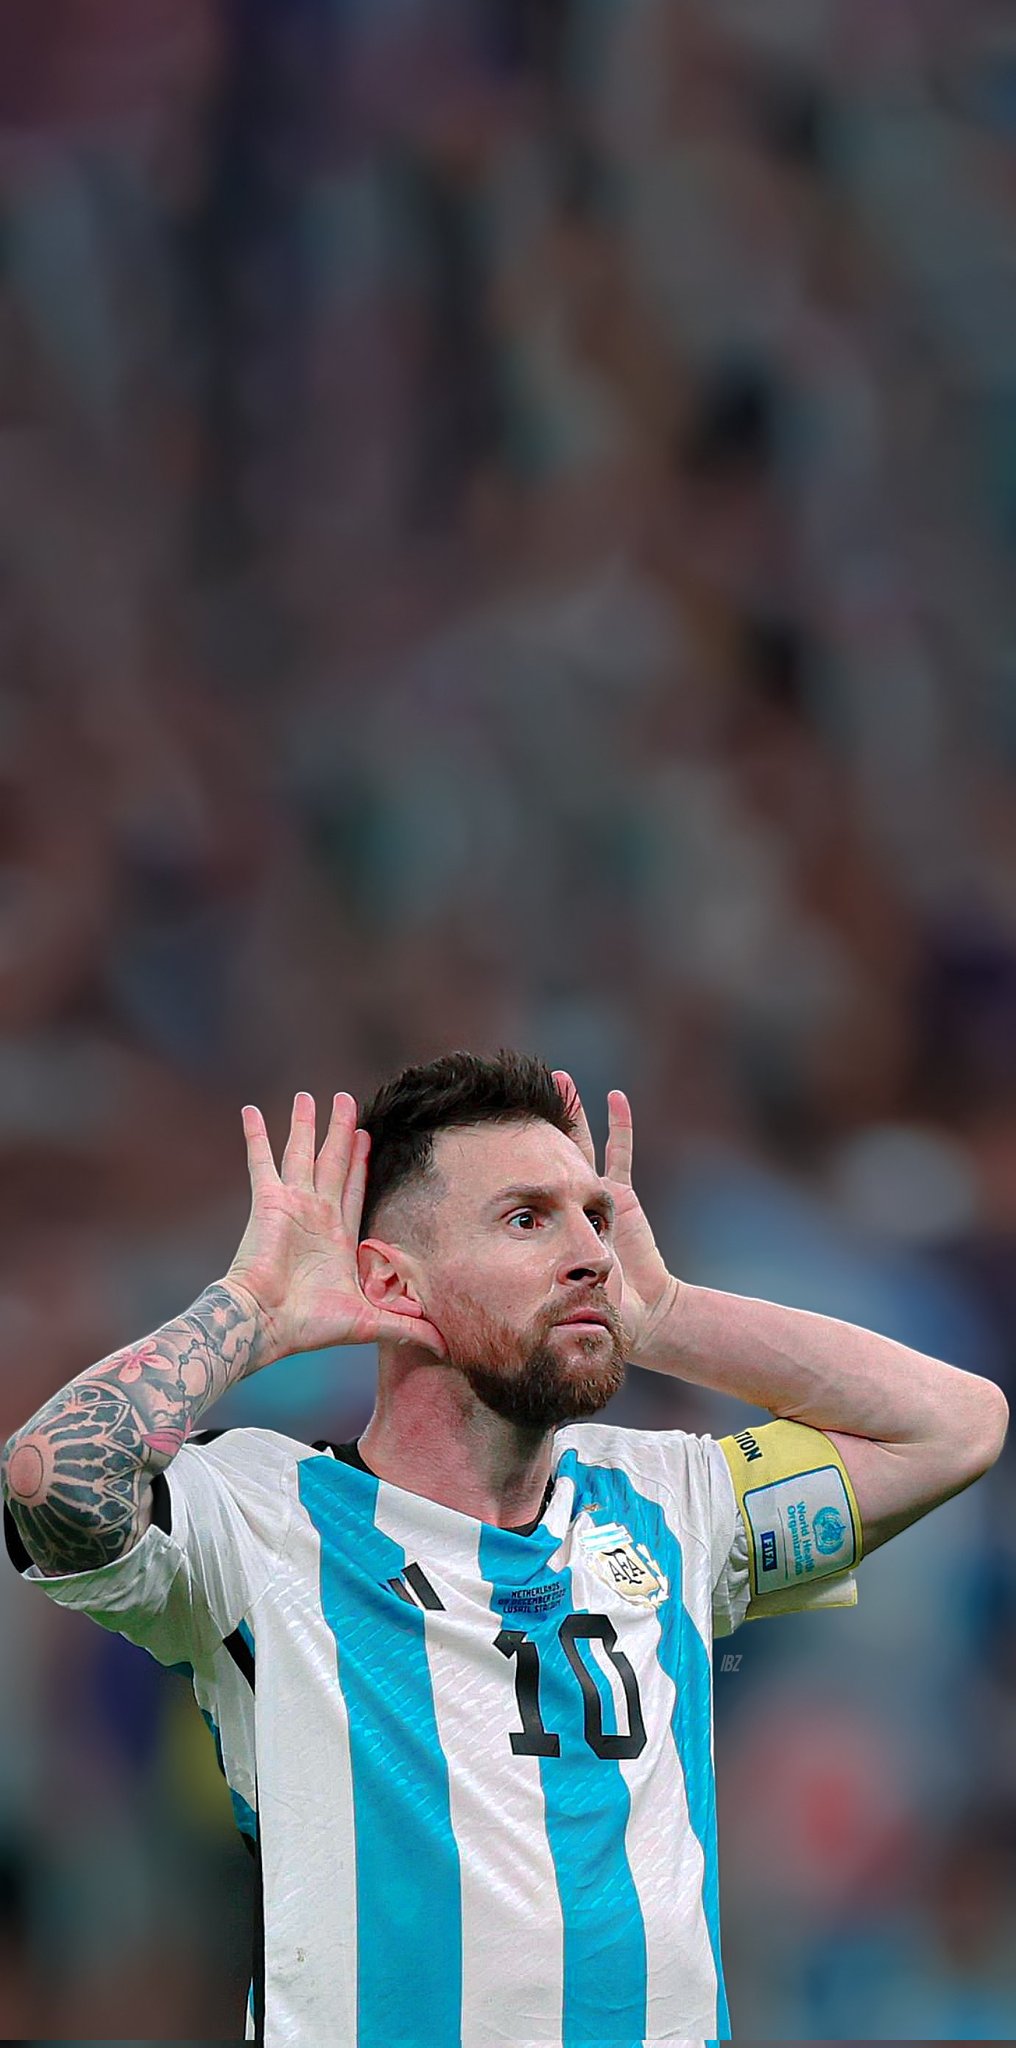 Hãy cùng ngắm nhìn bức ảnh nền của Lionel Messi tuyệt đẹp để thấy nguyên nhân tại sao anh ấy là một trong những cầu thủ hàng đầu thế giới. Hình nền của Messi sẽ đem lại cho bạn sự cảm hứng lớn đến mức bạn sẽ muốn xem bức ảnh này hàng ngày.